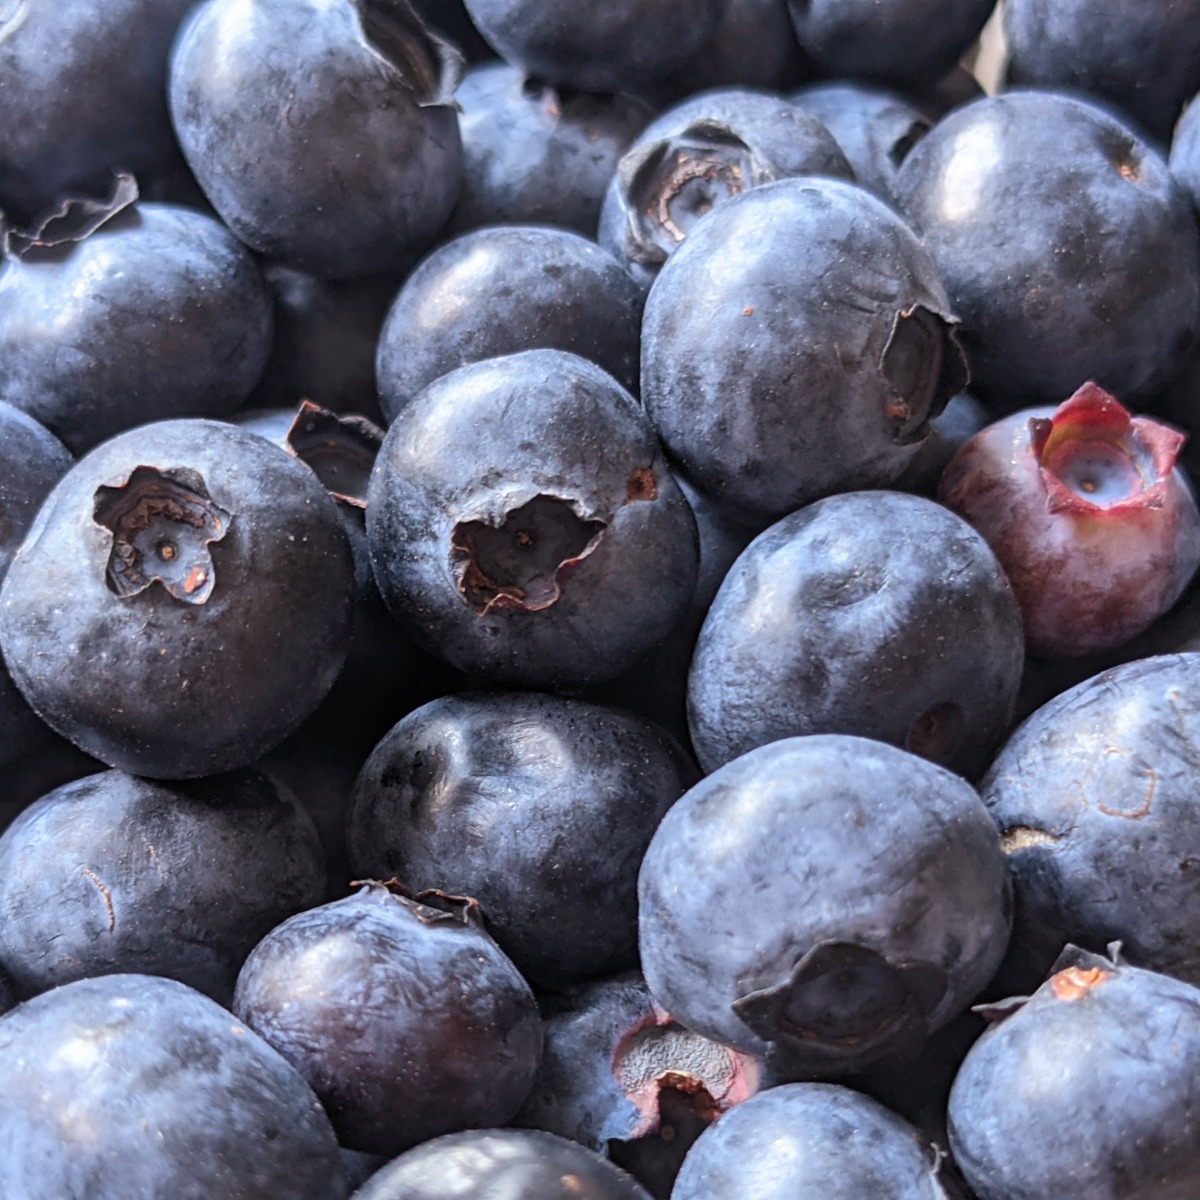 Fresh blueberries in the full frame